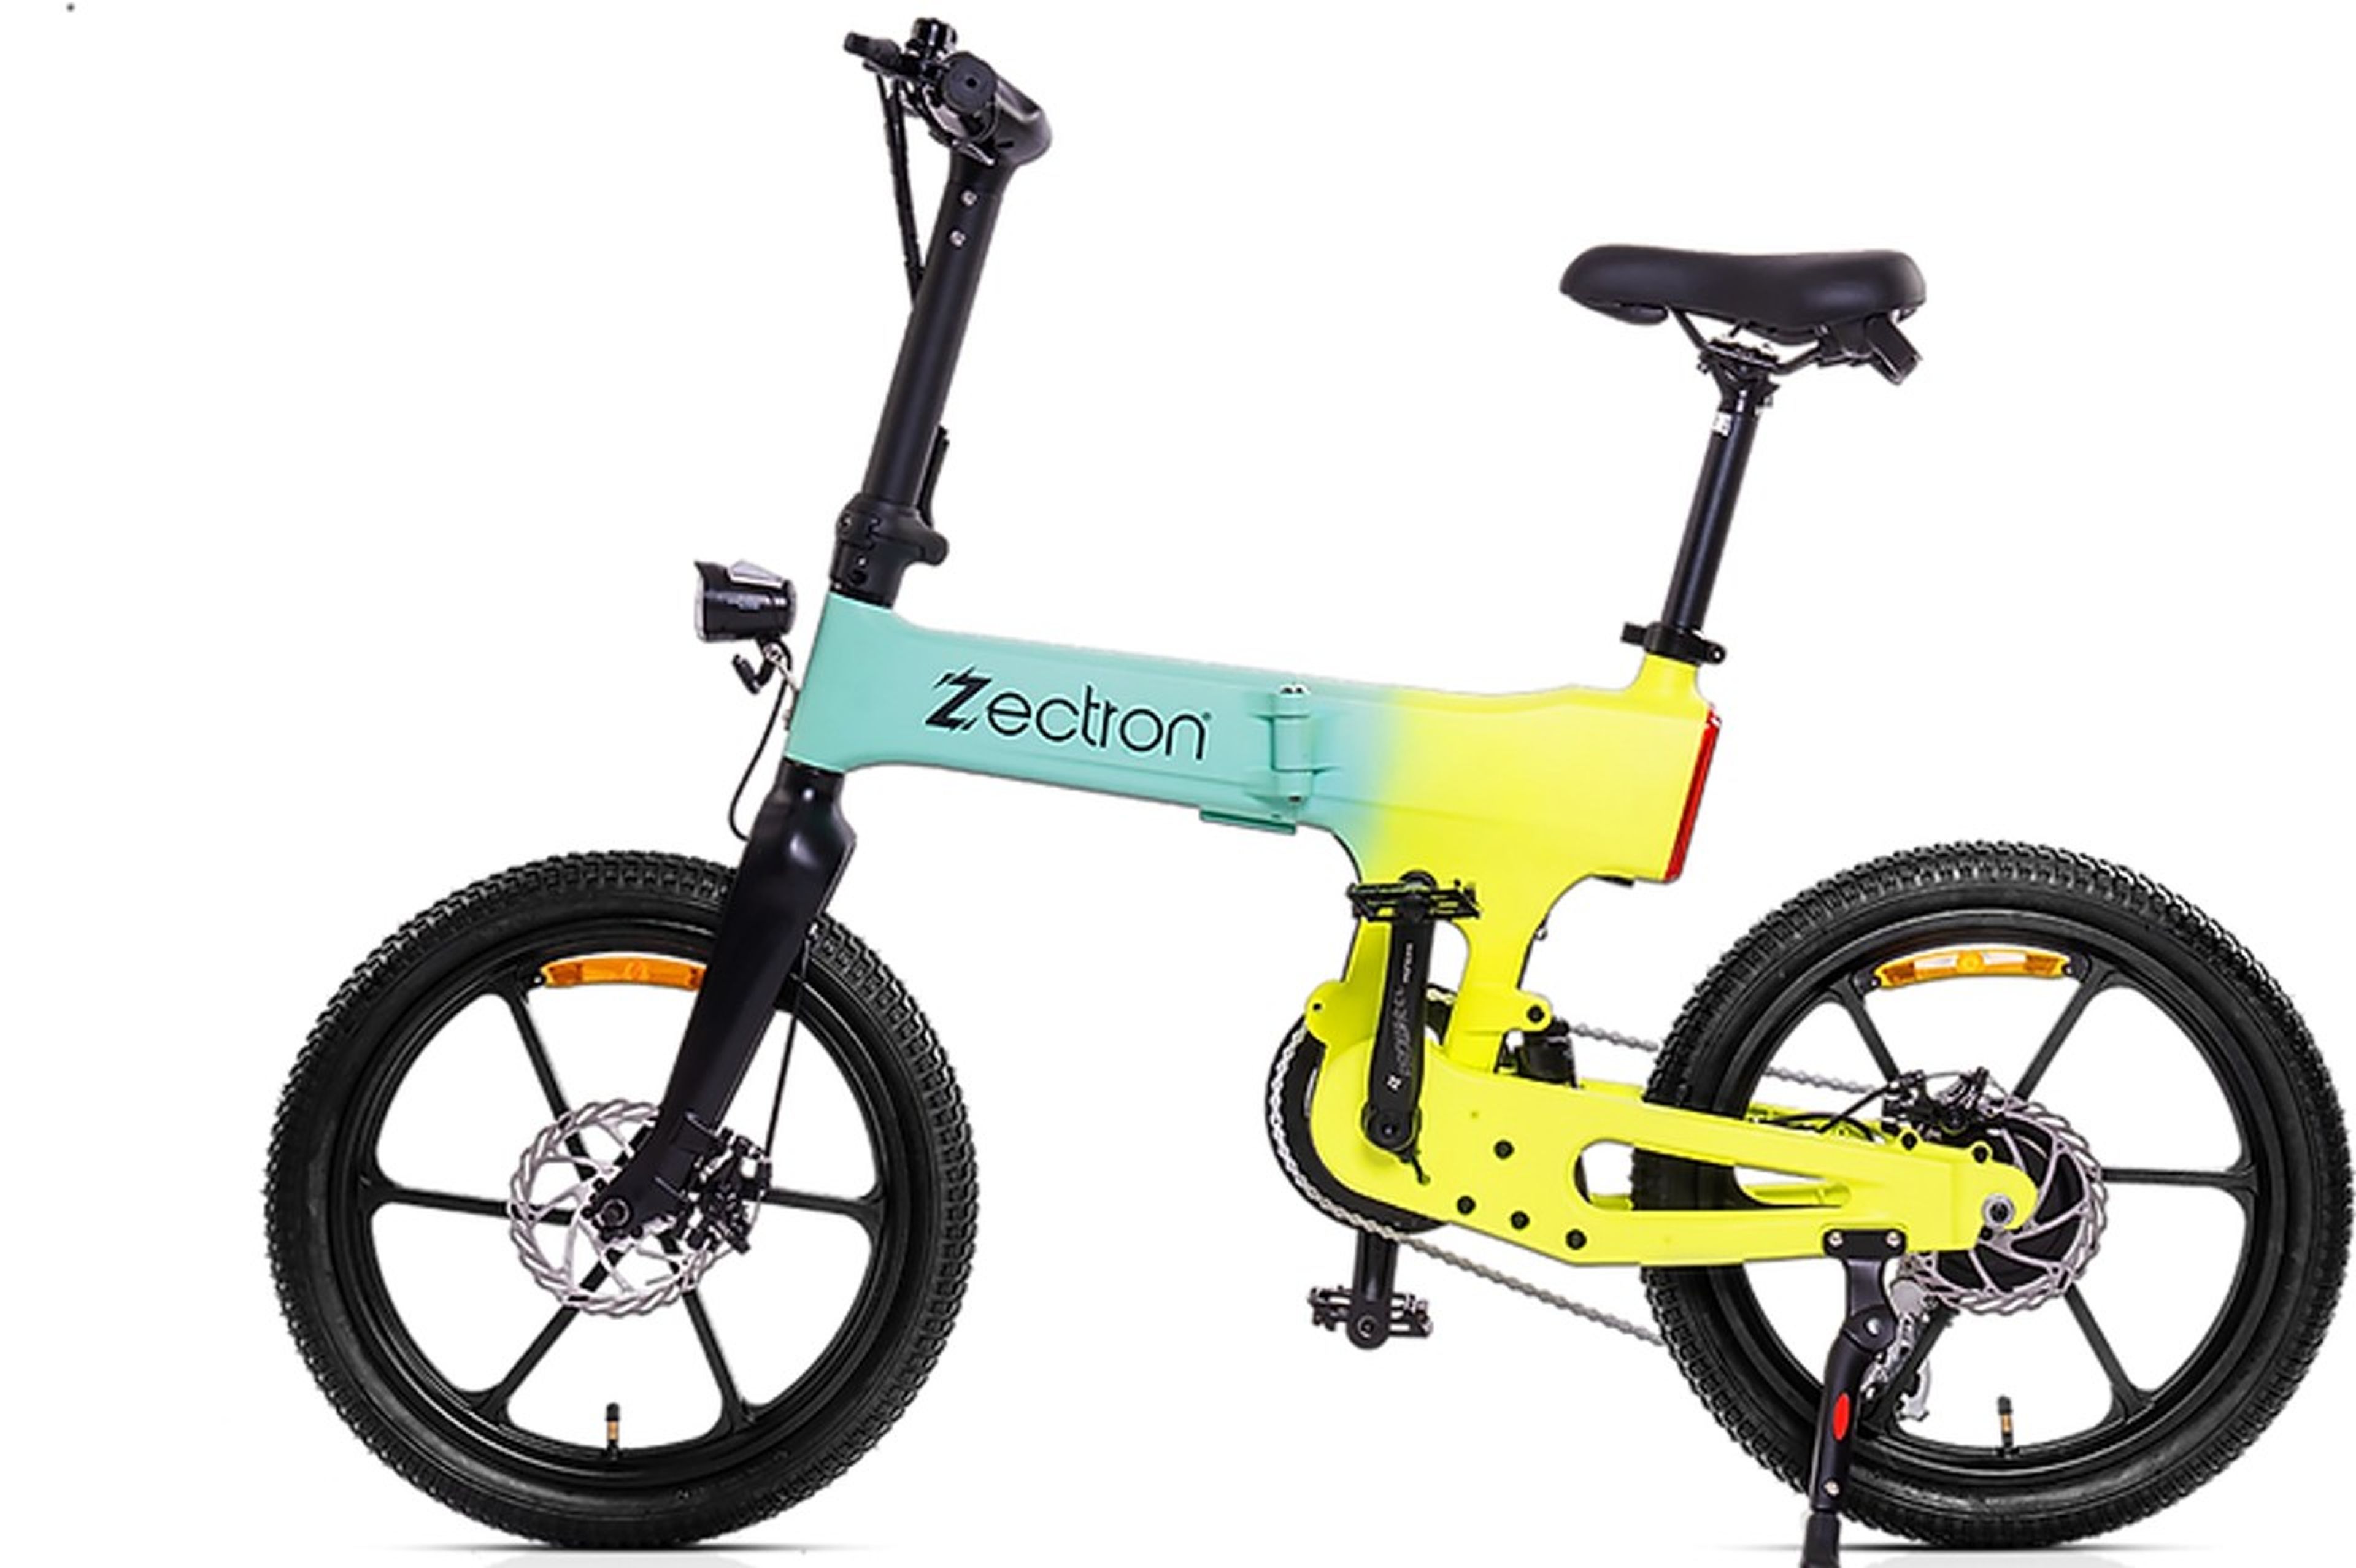 Bicicleta eléctrica Zectron